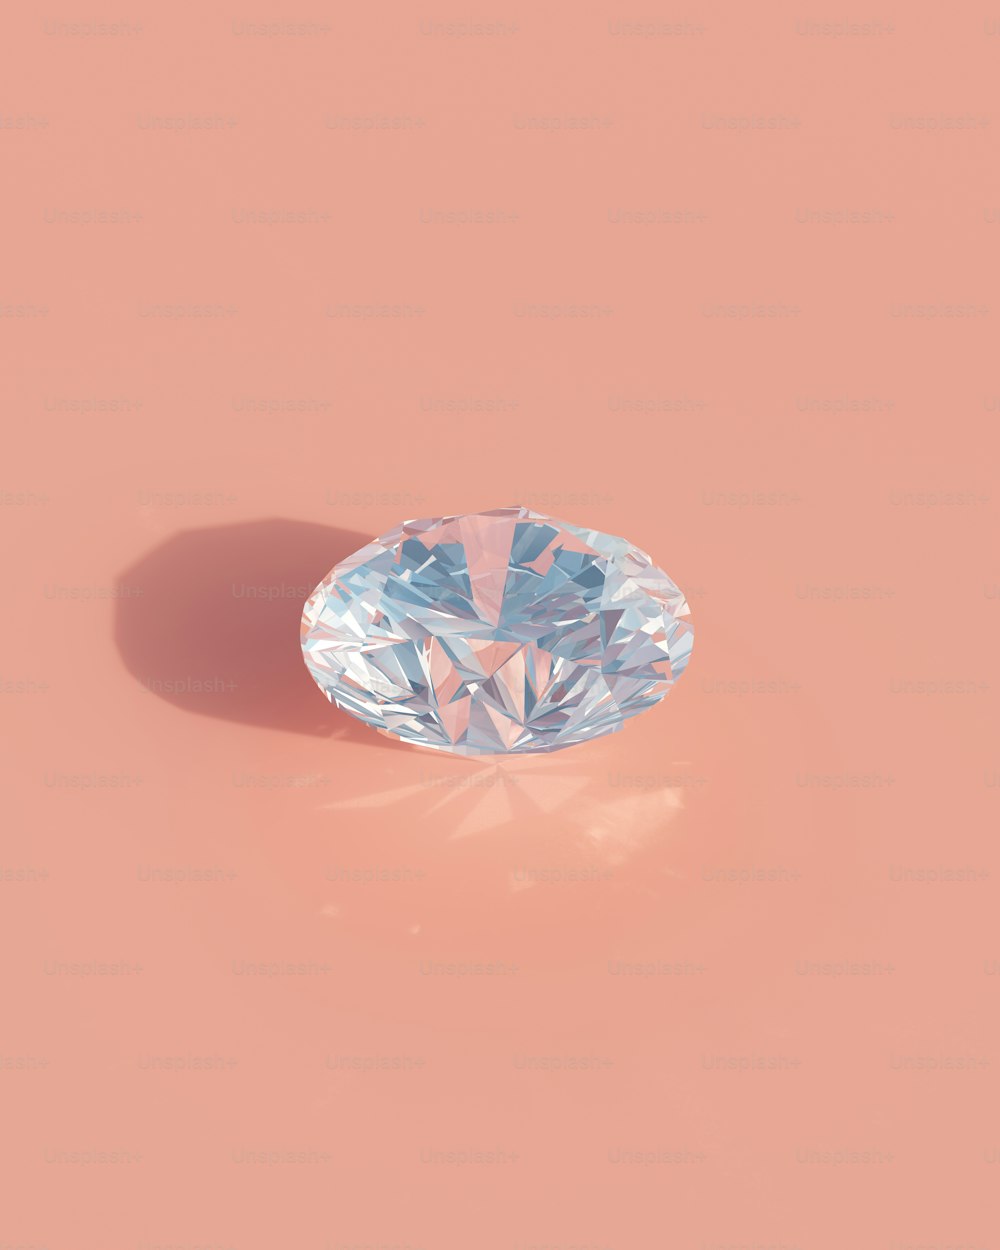 분홍색 배경에 하늘색 다이아몬드